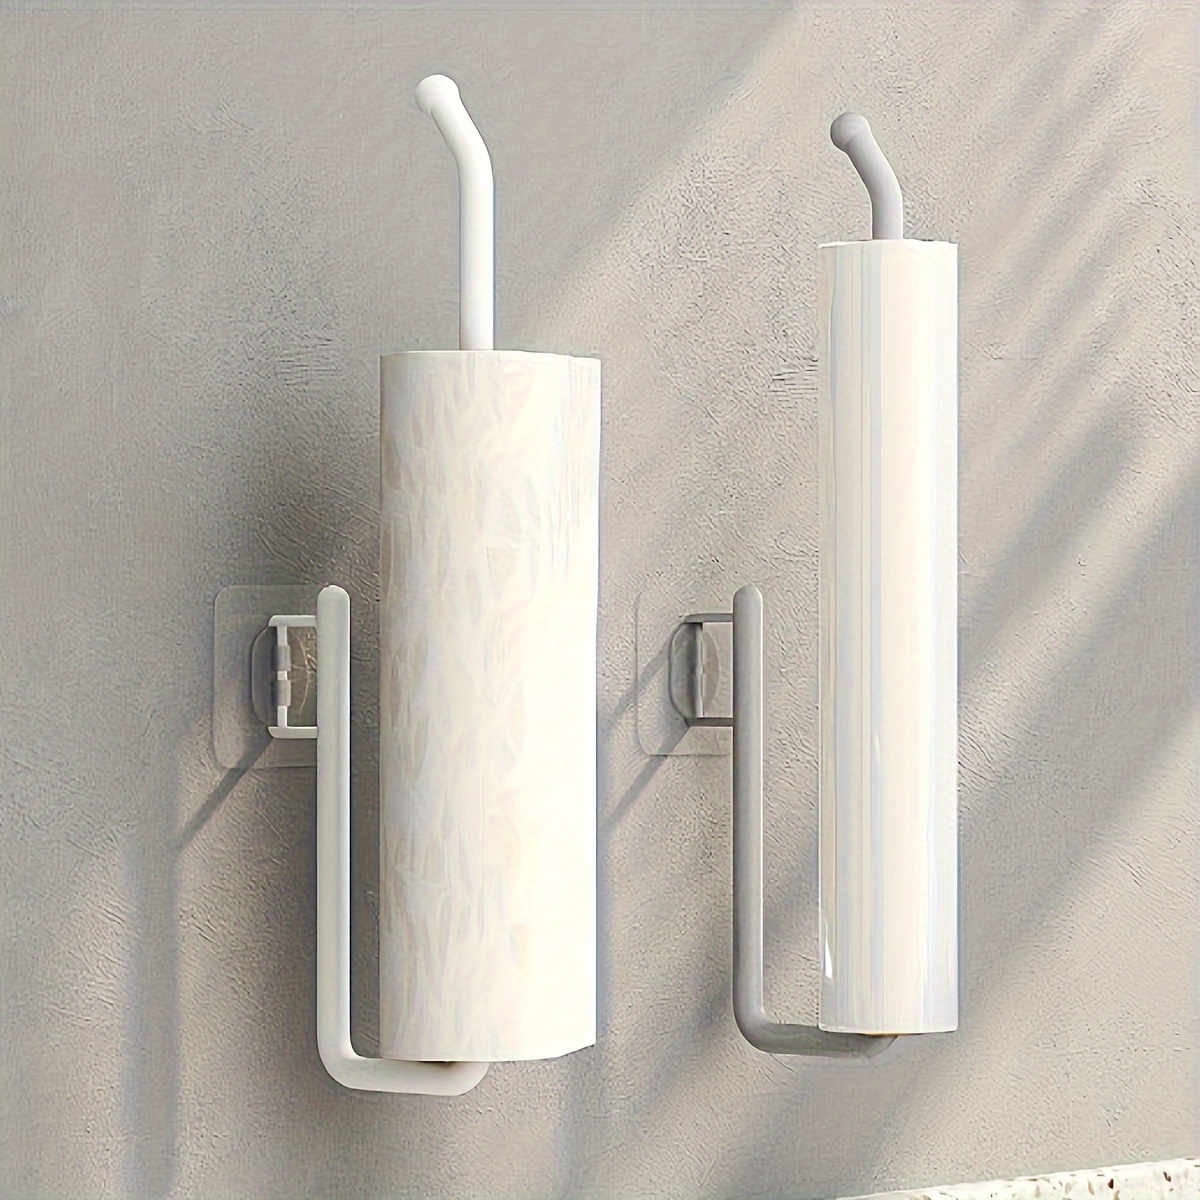 Portarrollos de papel higiénico con estante - Soporte para papel